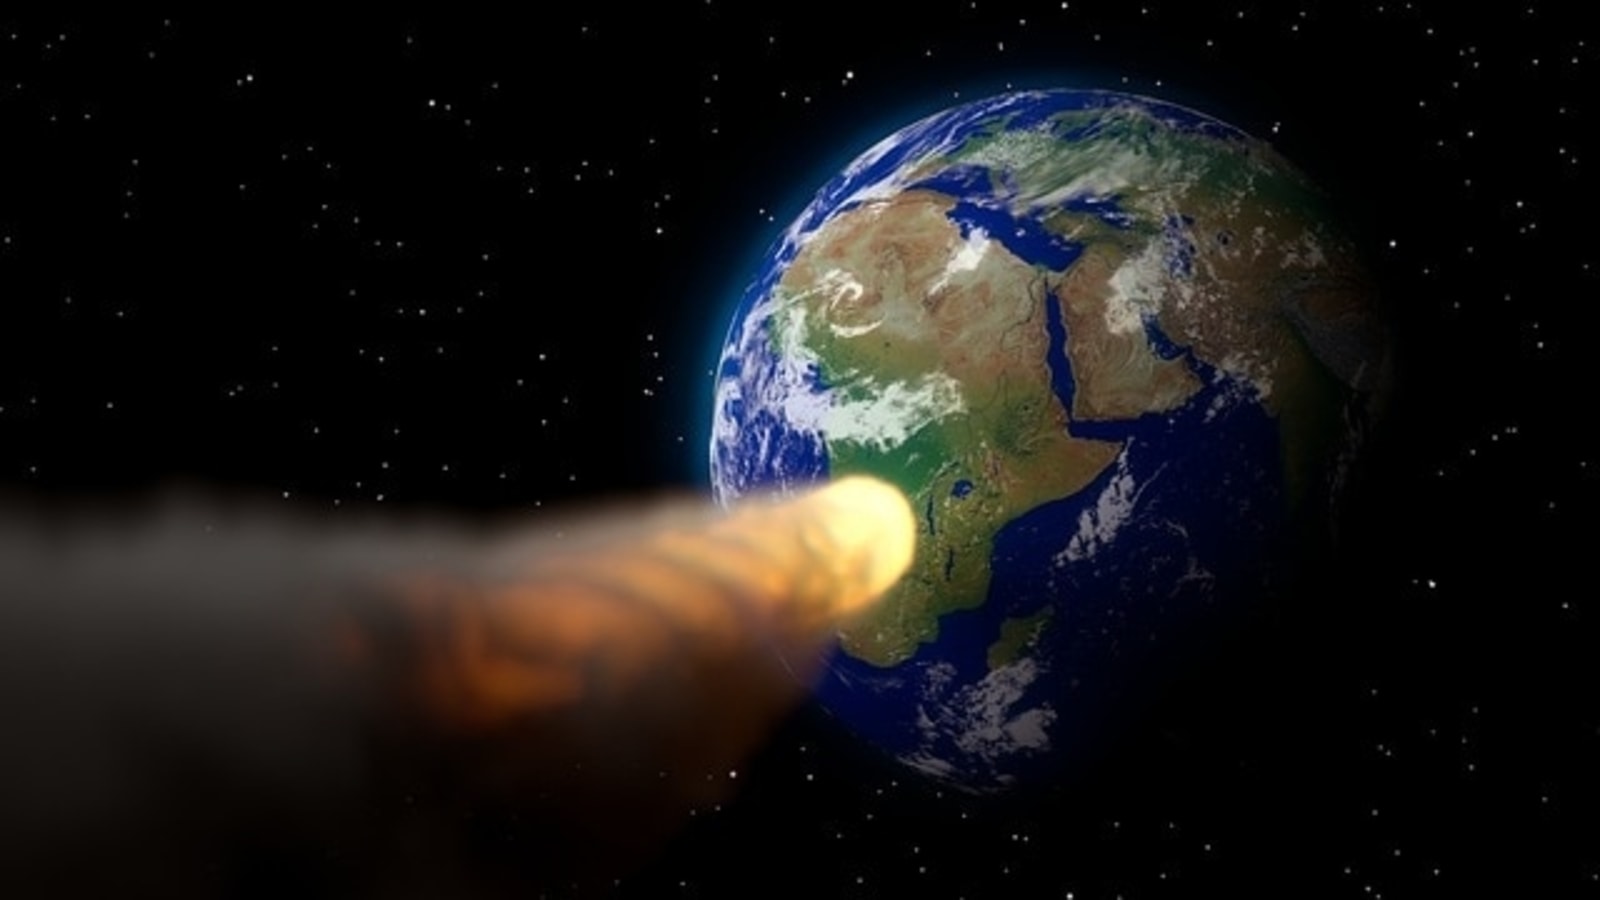 Asteroide de 262 pies 5 se acerca a la Tierra, revela la NASA